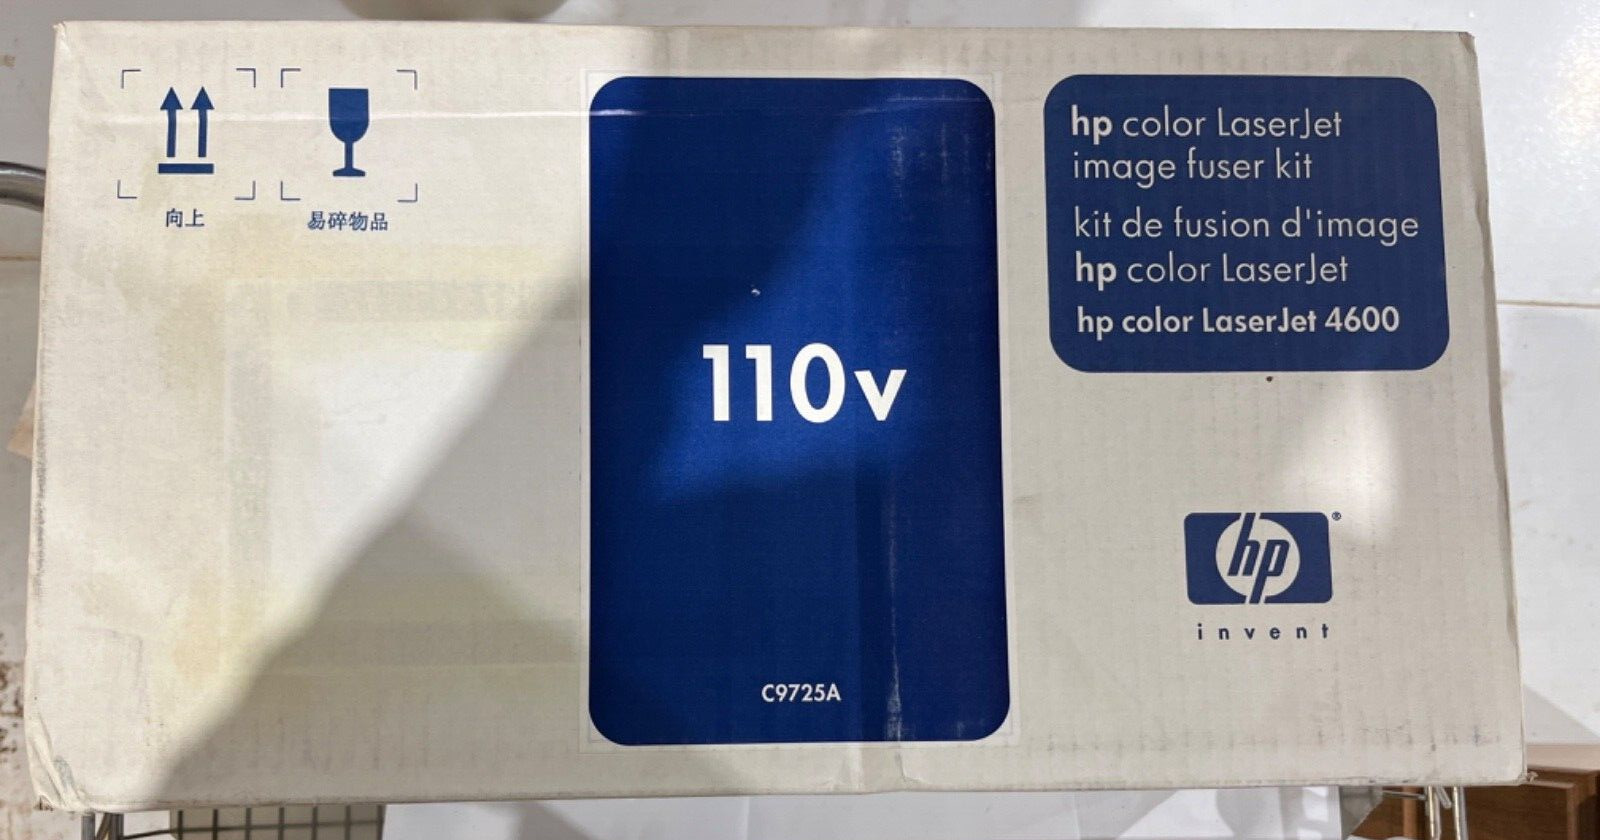 Genuine HP Color LaserJet Image Fuser Kit C9725A Sealed OEM NIB Free S/H